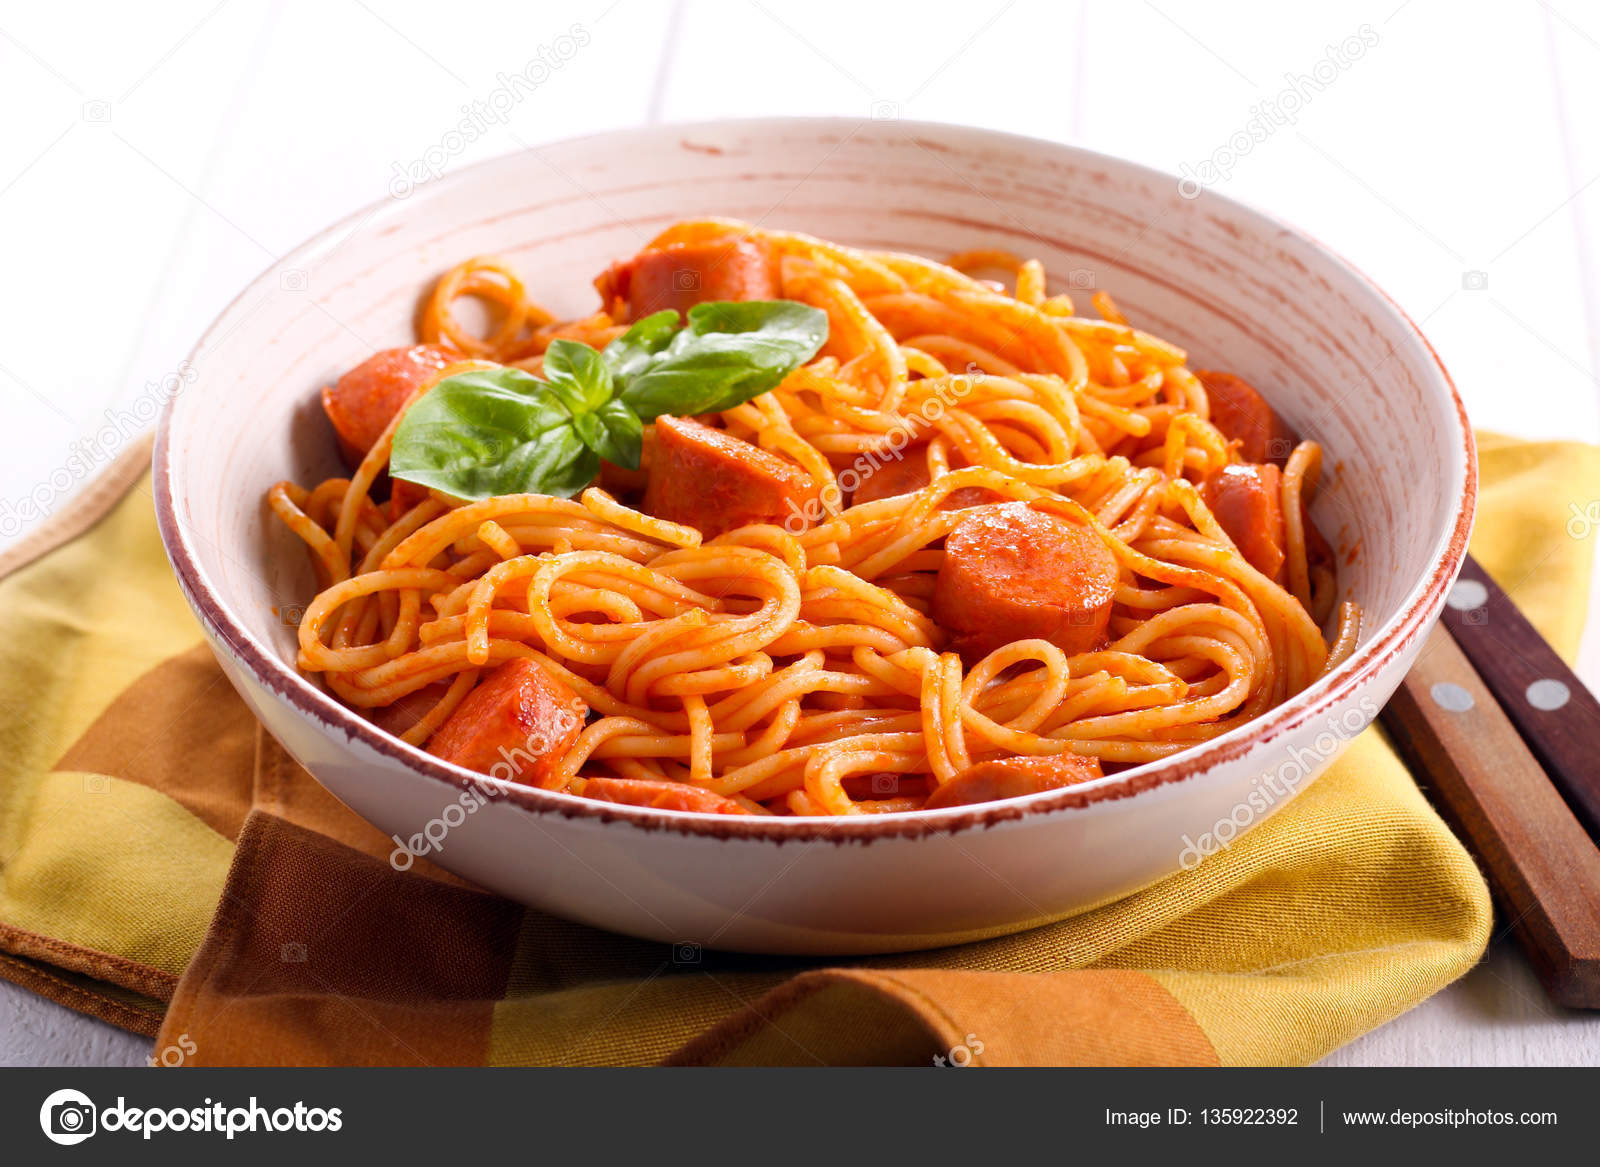 Spaghetti und Würstchen mit Soße — Stockfoto © manyakotic #135922392